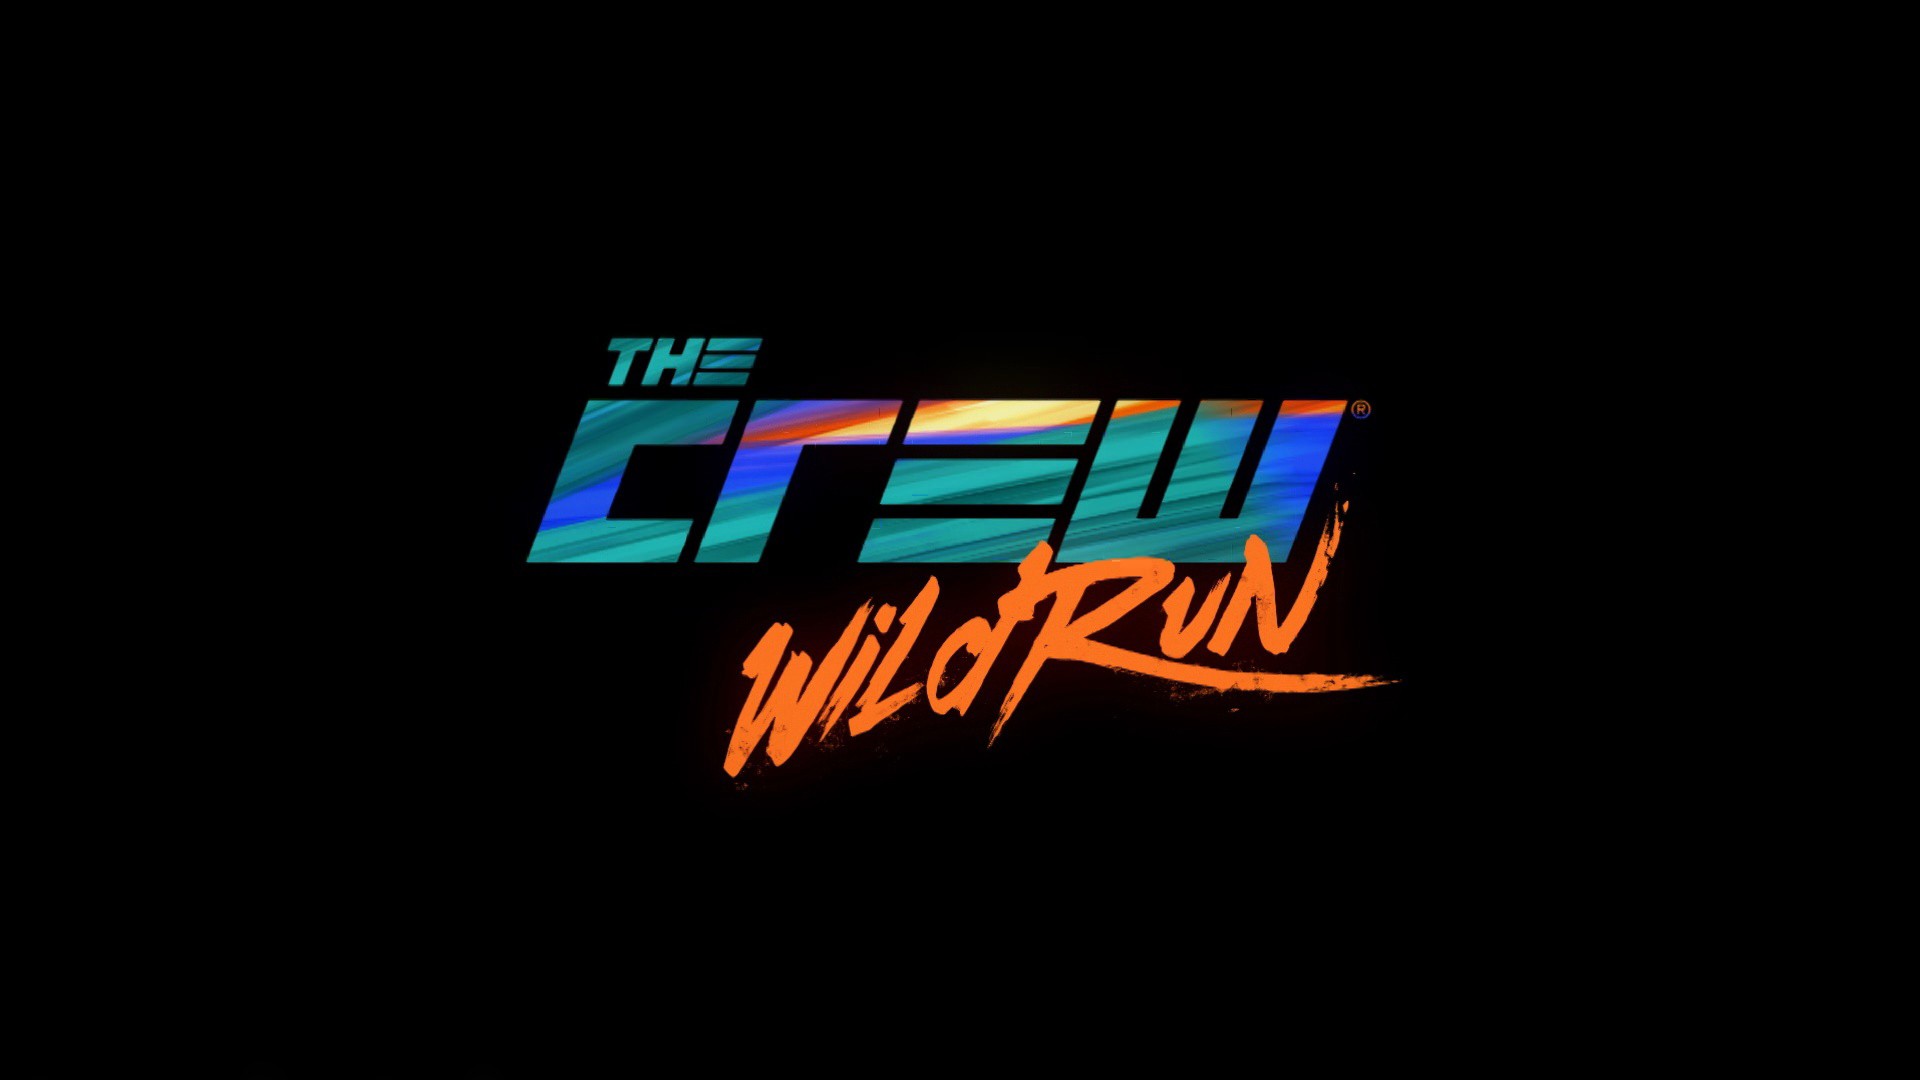 The Crew Wild Run Ubisoft The Crew 1920x1080